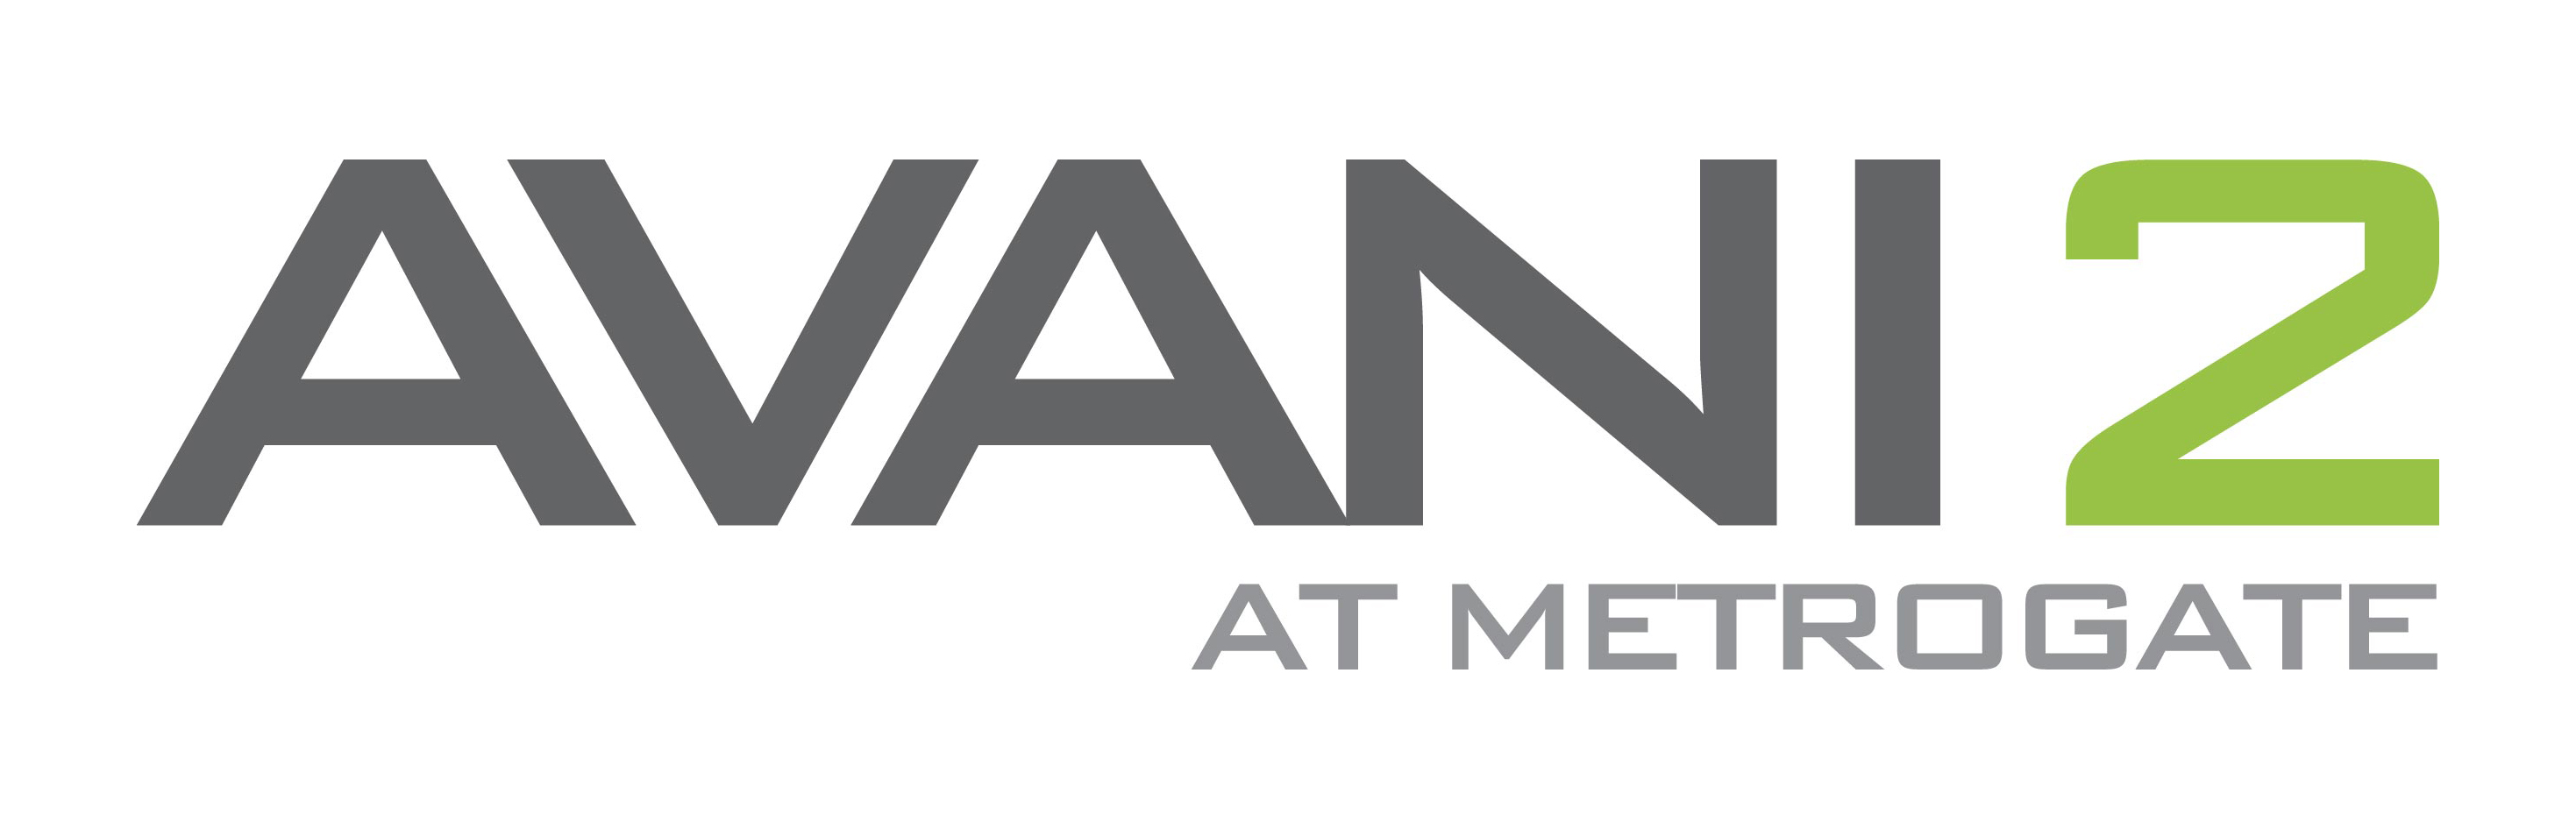 Avani 2 logo